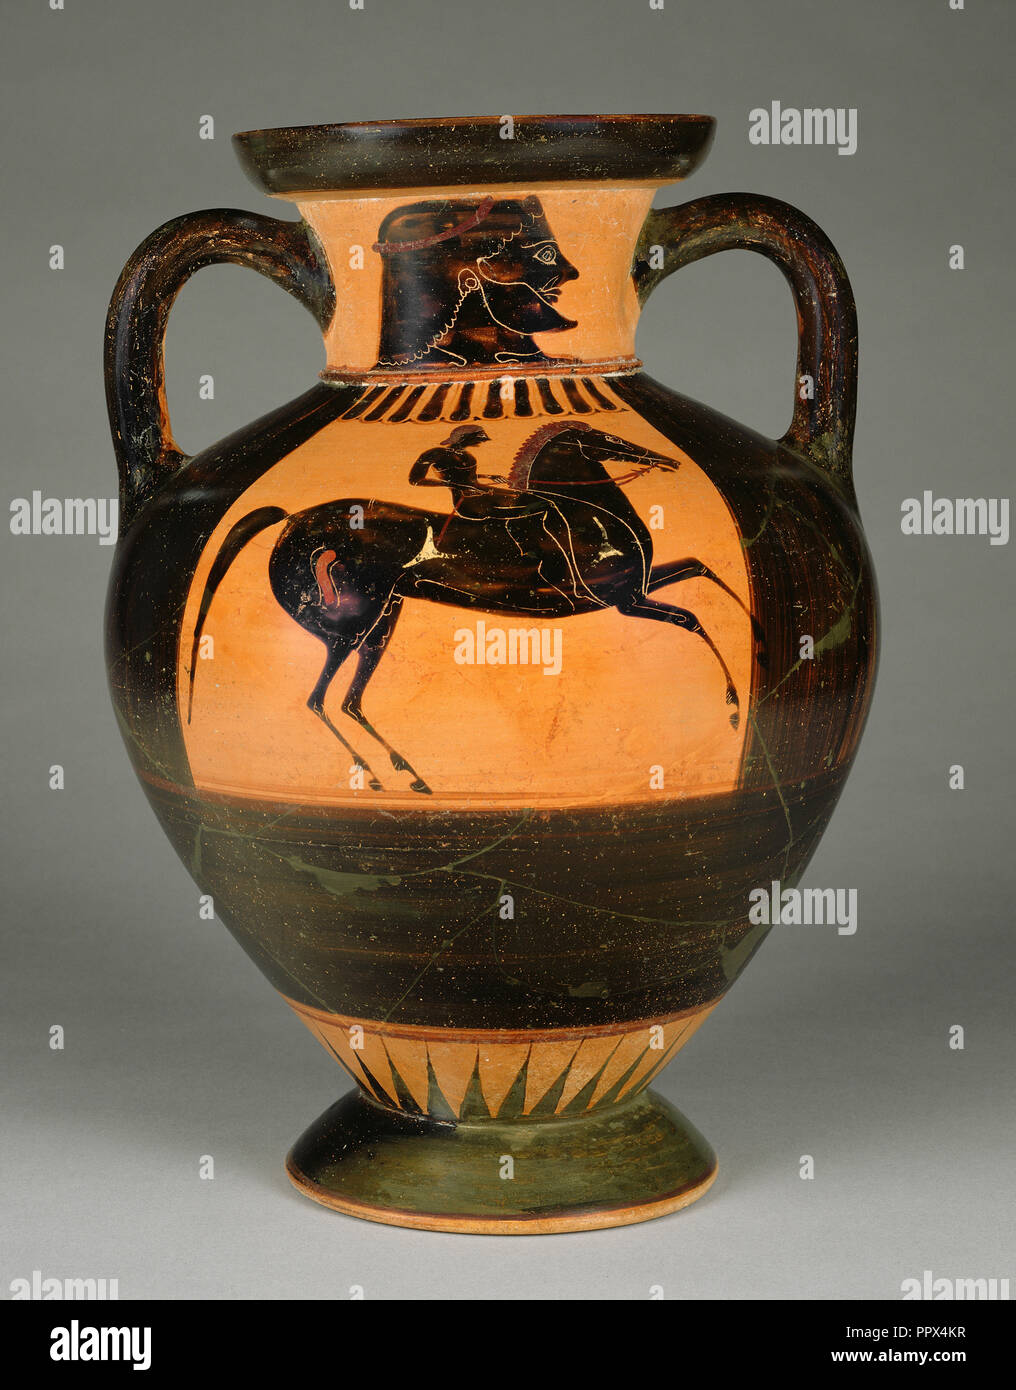 Vaso di storage; attribuita al Pittore di Acropoli 606, greco, soffitta, attivo 570 - 560 A.C., Atene, Grecia; circa 570 - 560 A.C. Foto Stock